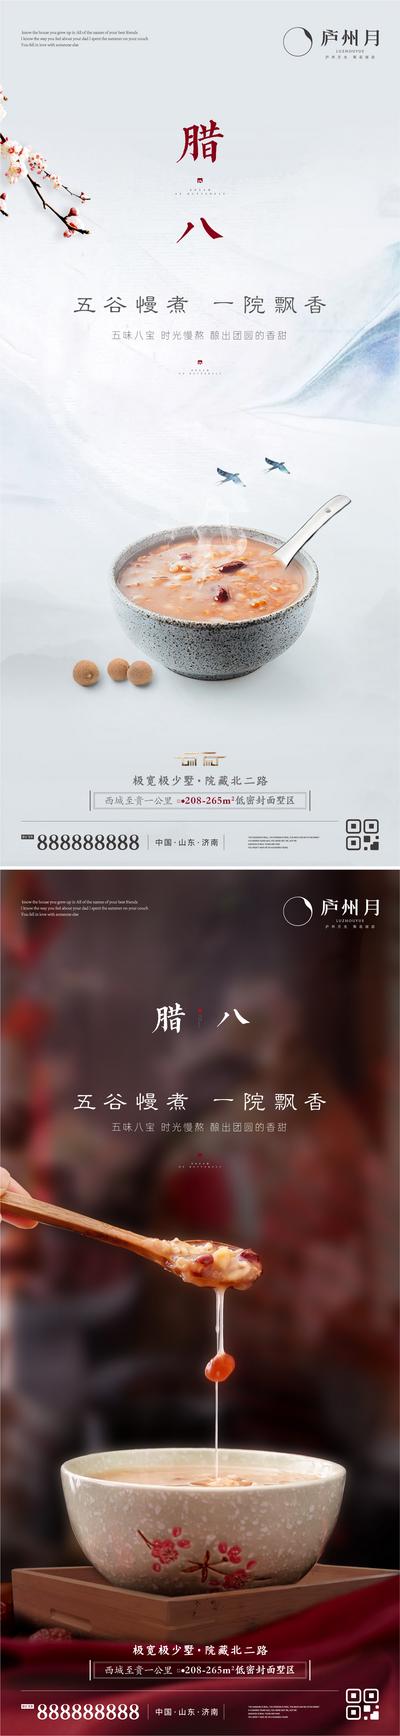 南门网 海报 中国传统节日 腊八节 中式 八宝粥 过年 温馨